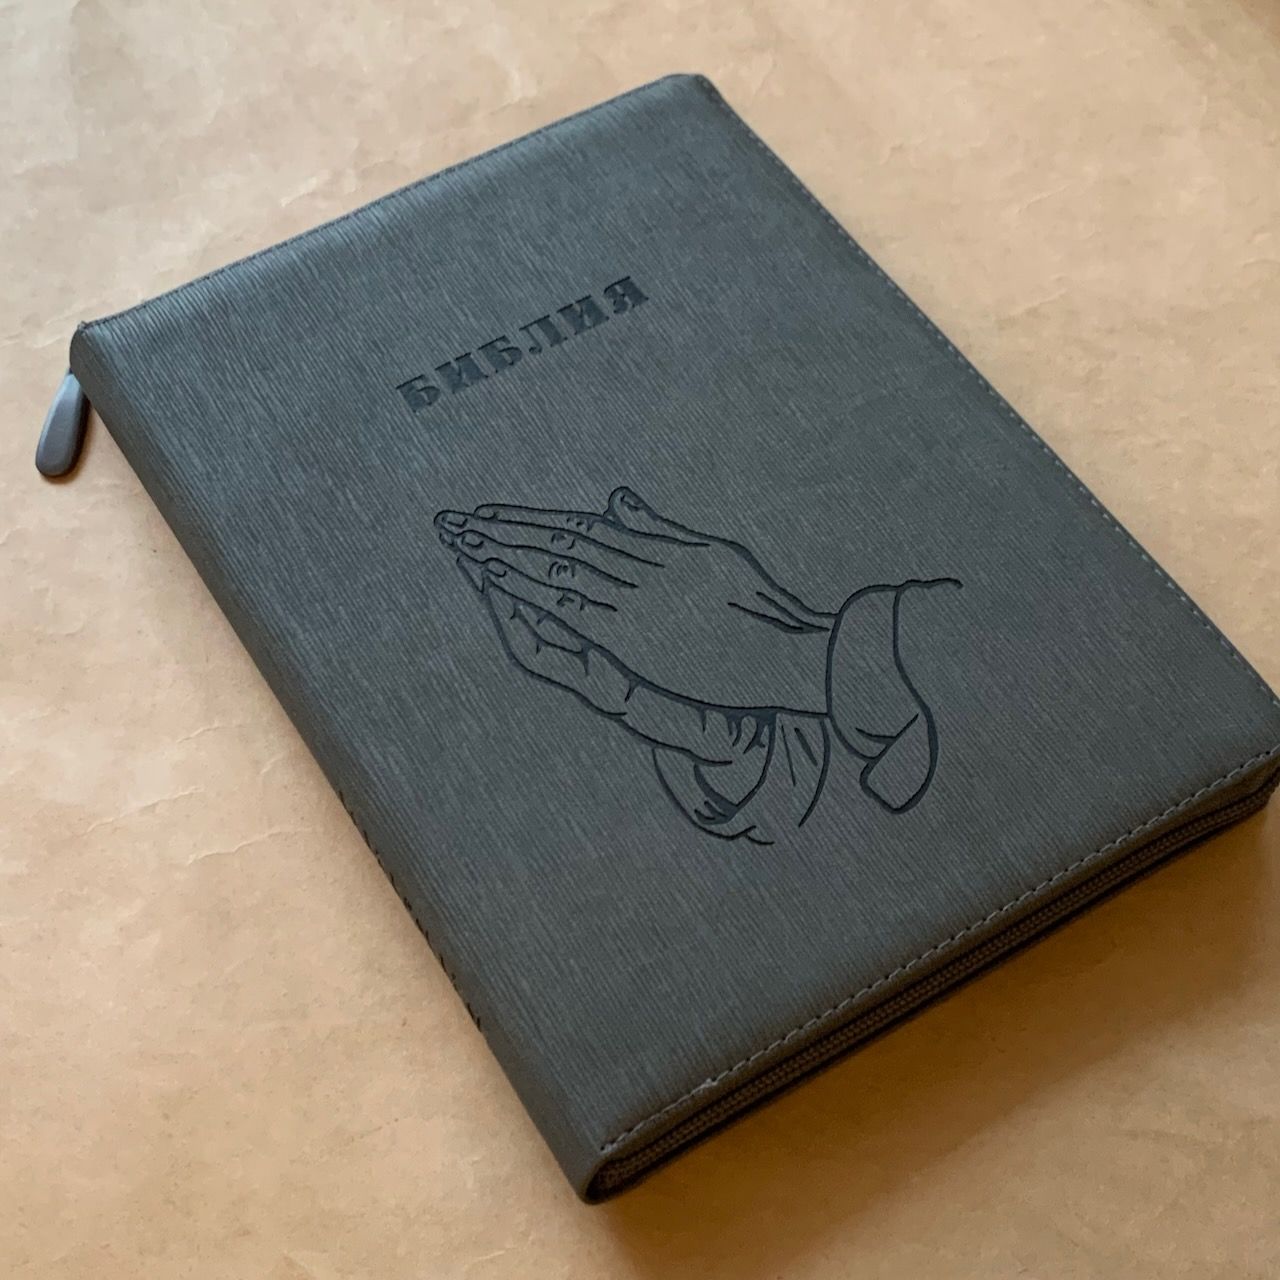 Библия 076z код F1, дизайн "термо штамп руки молящегося", переплет из искусственной кожи на молнии, цвет серый графит ребристый, размер 180x243 мм